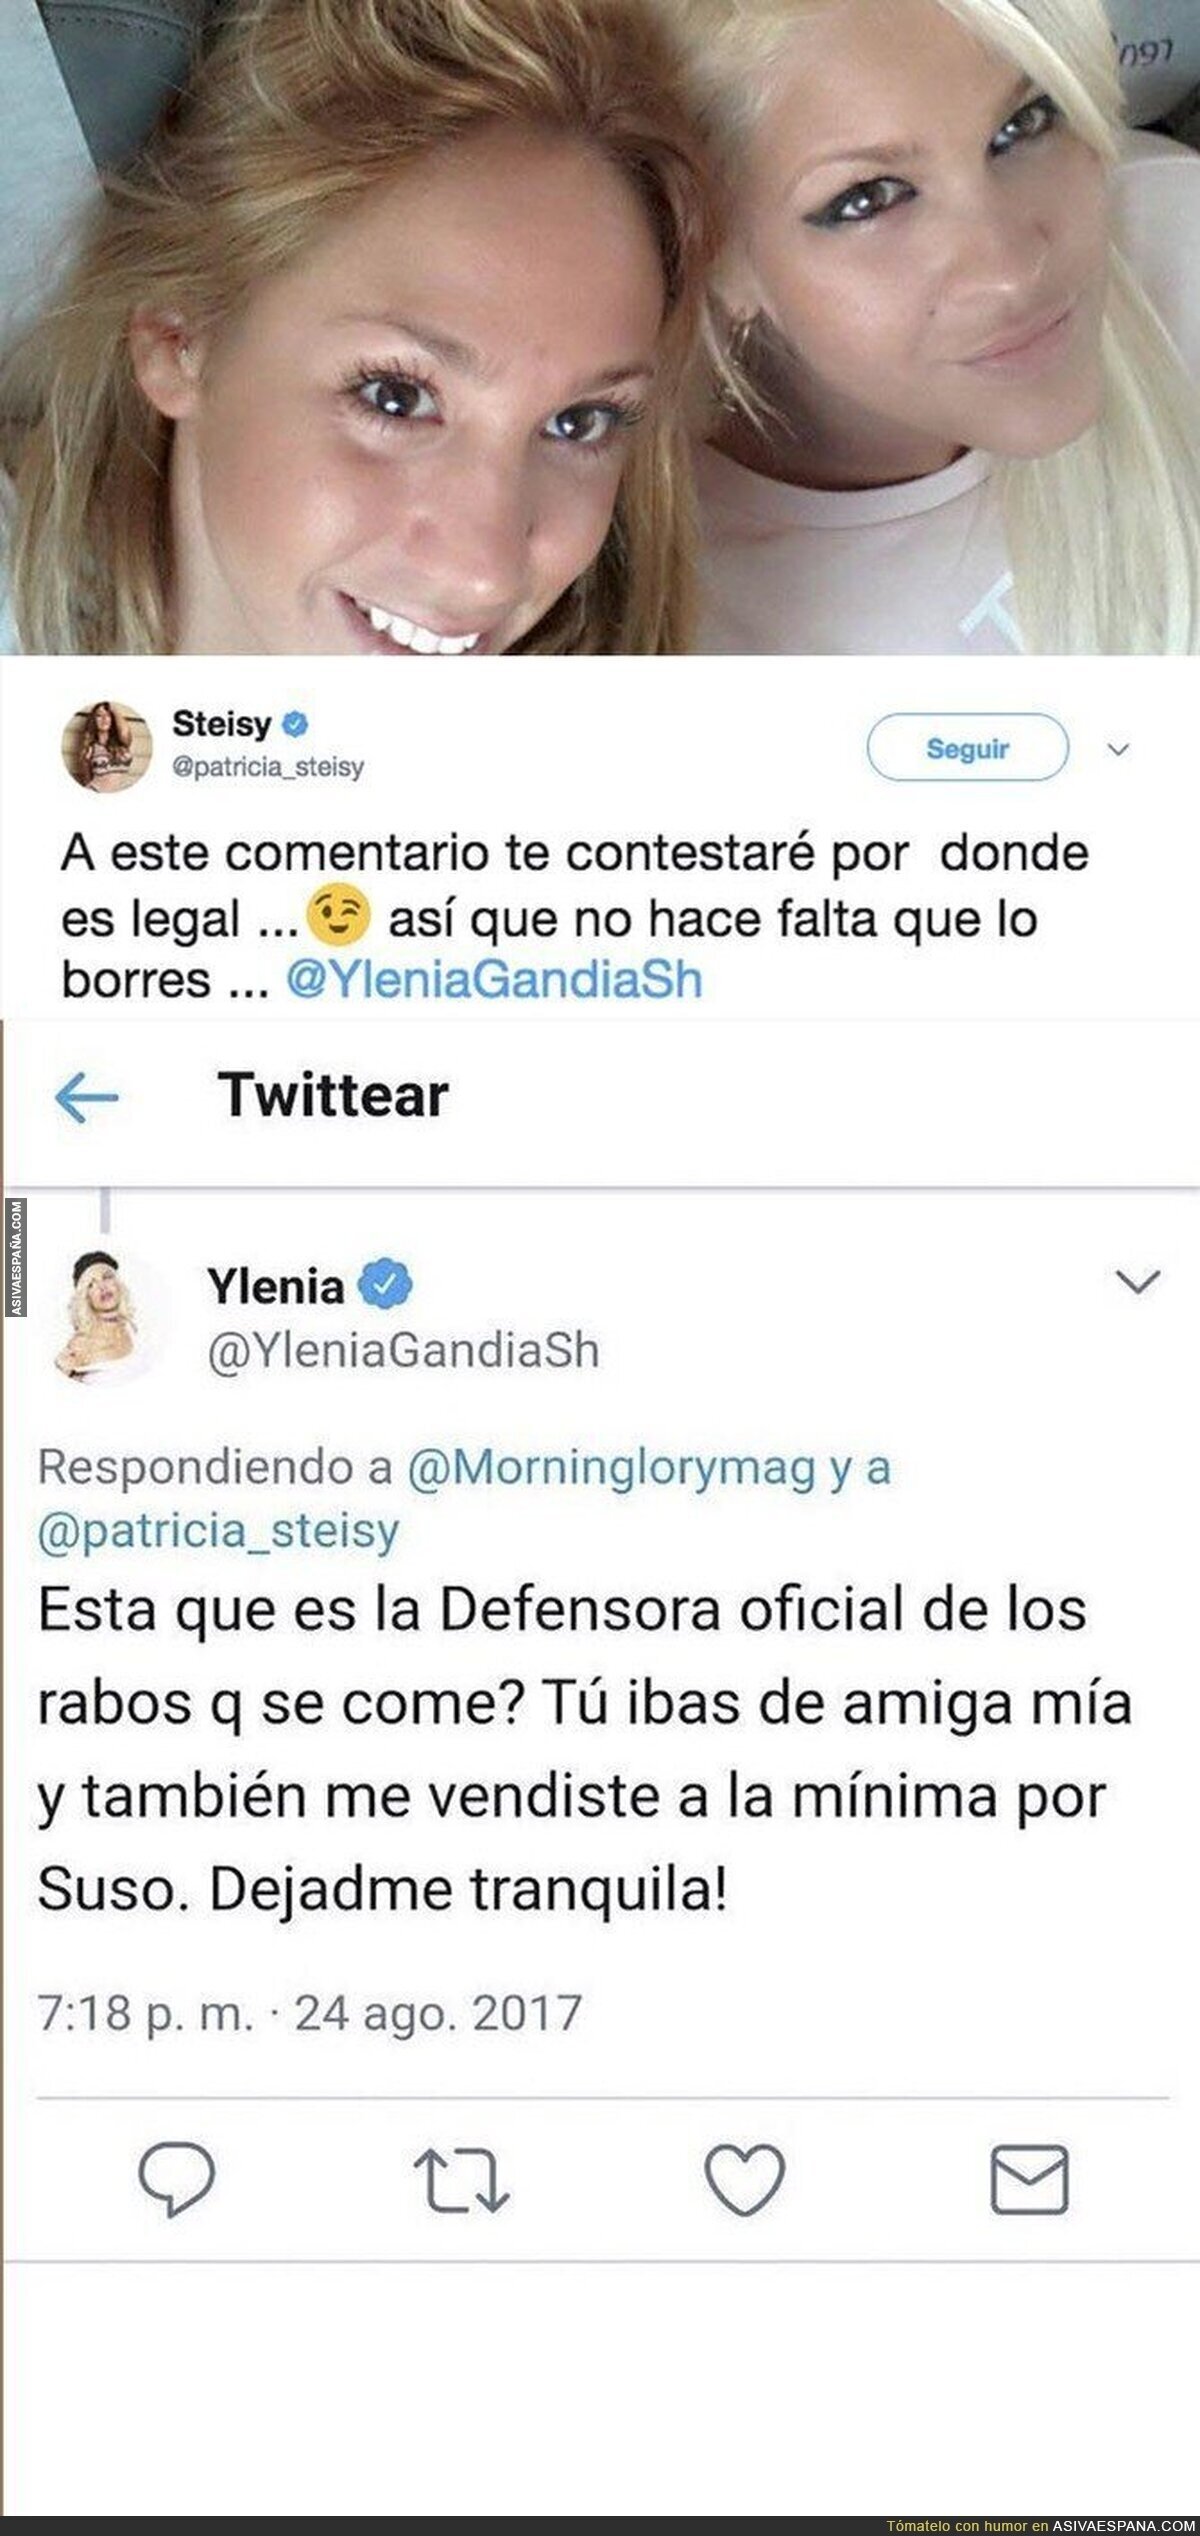 Ylenia insulta a Steisy en Twitter de esta forma y la denunciará tras ello